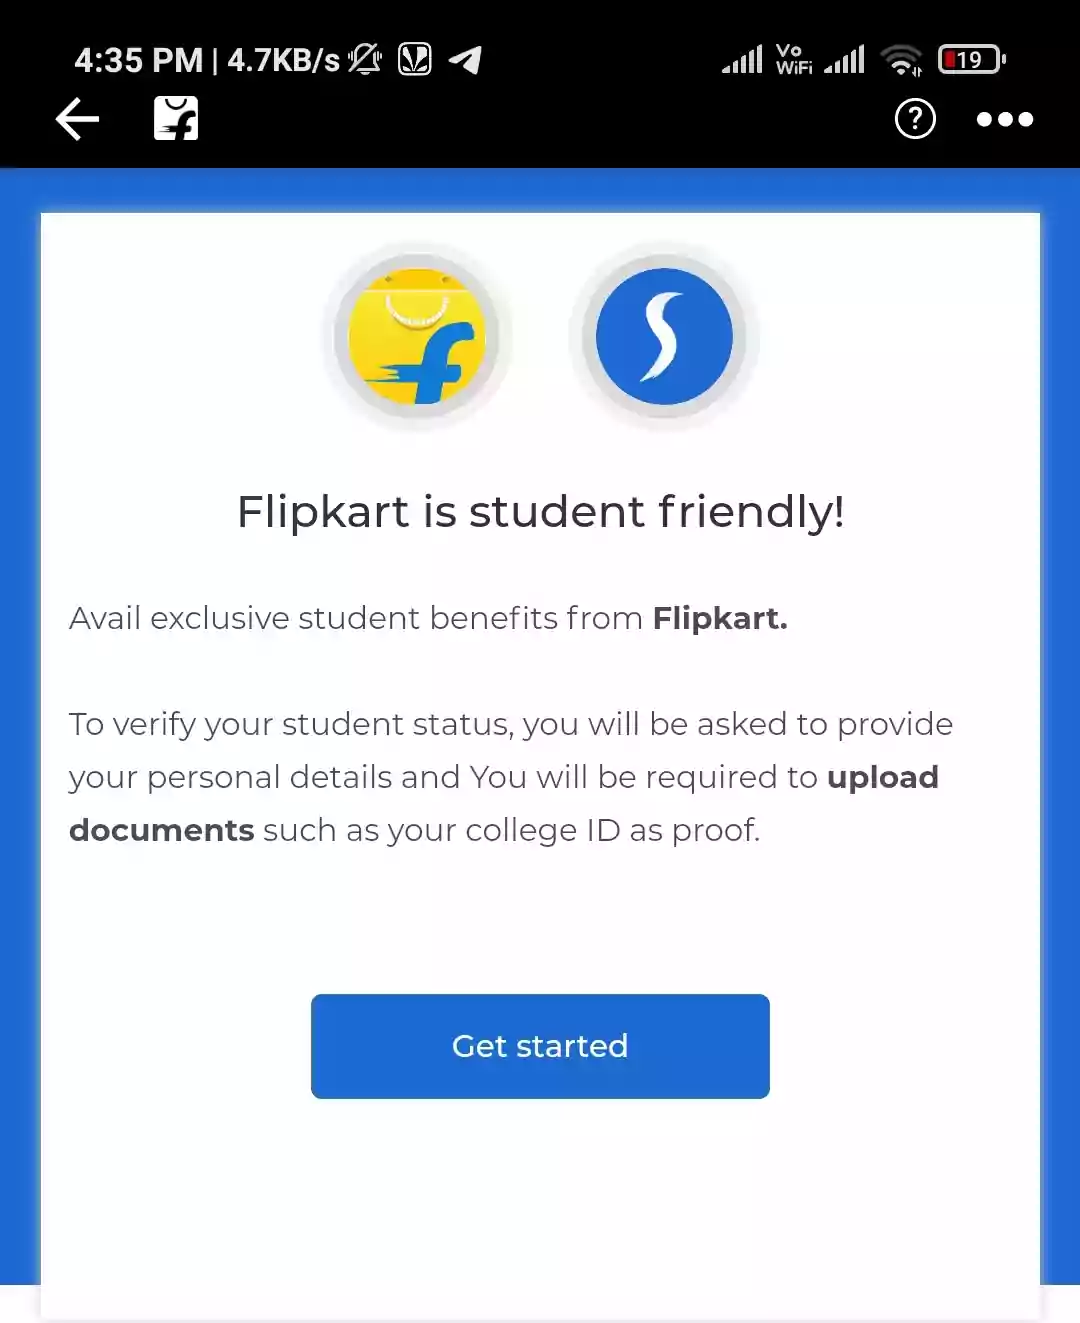 Flipkart Mobile Student Club Offer